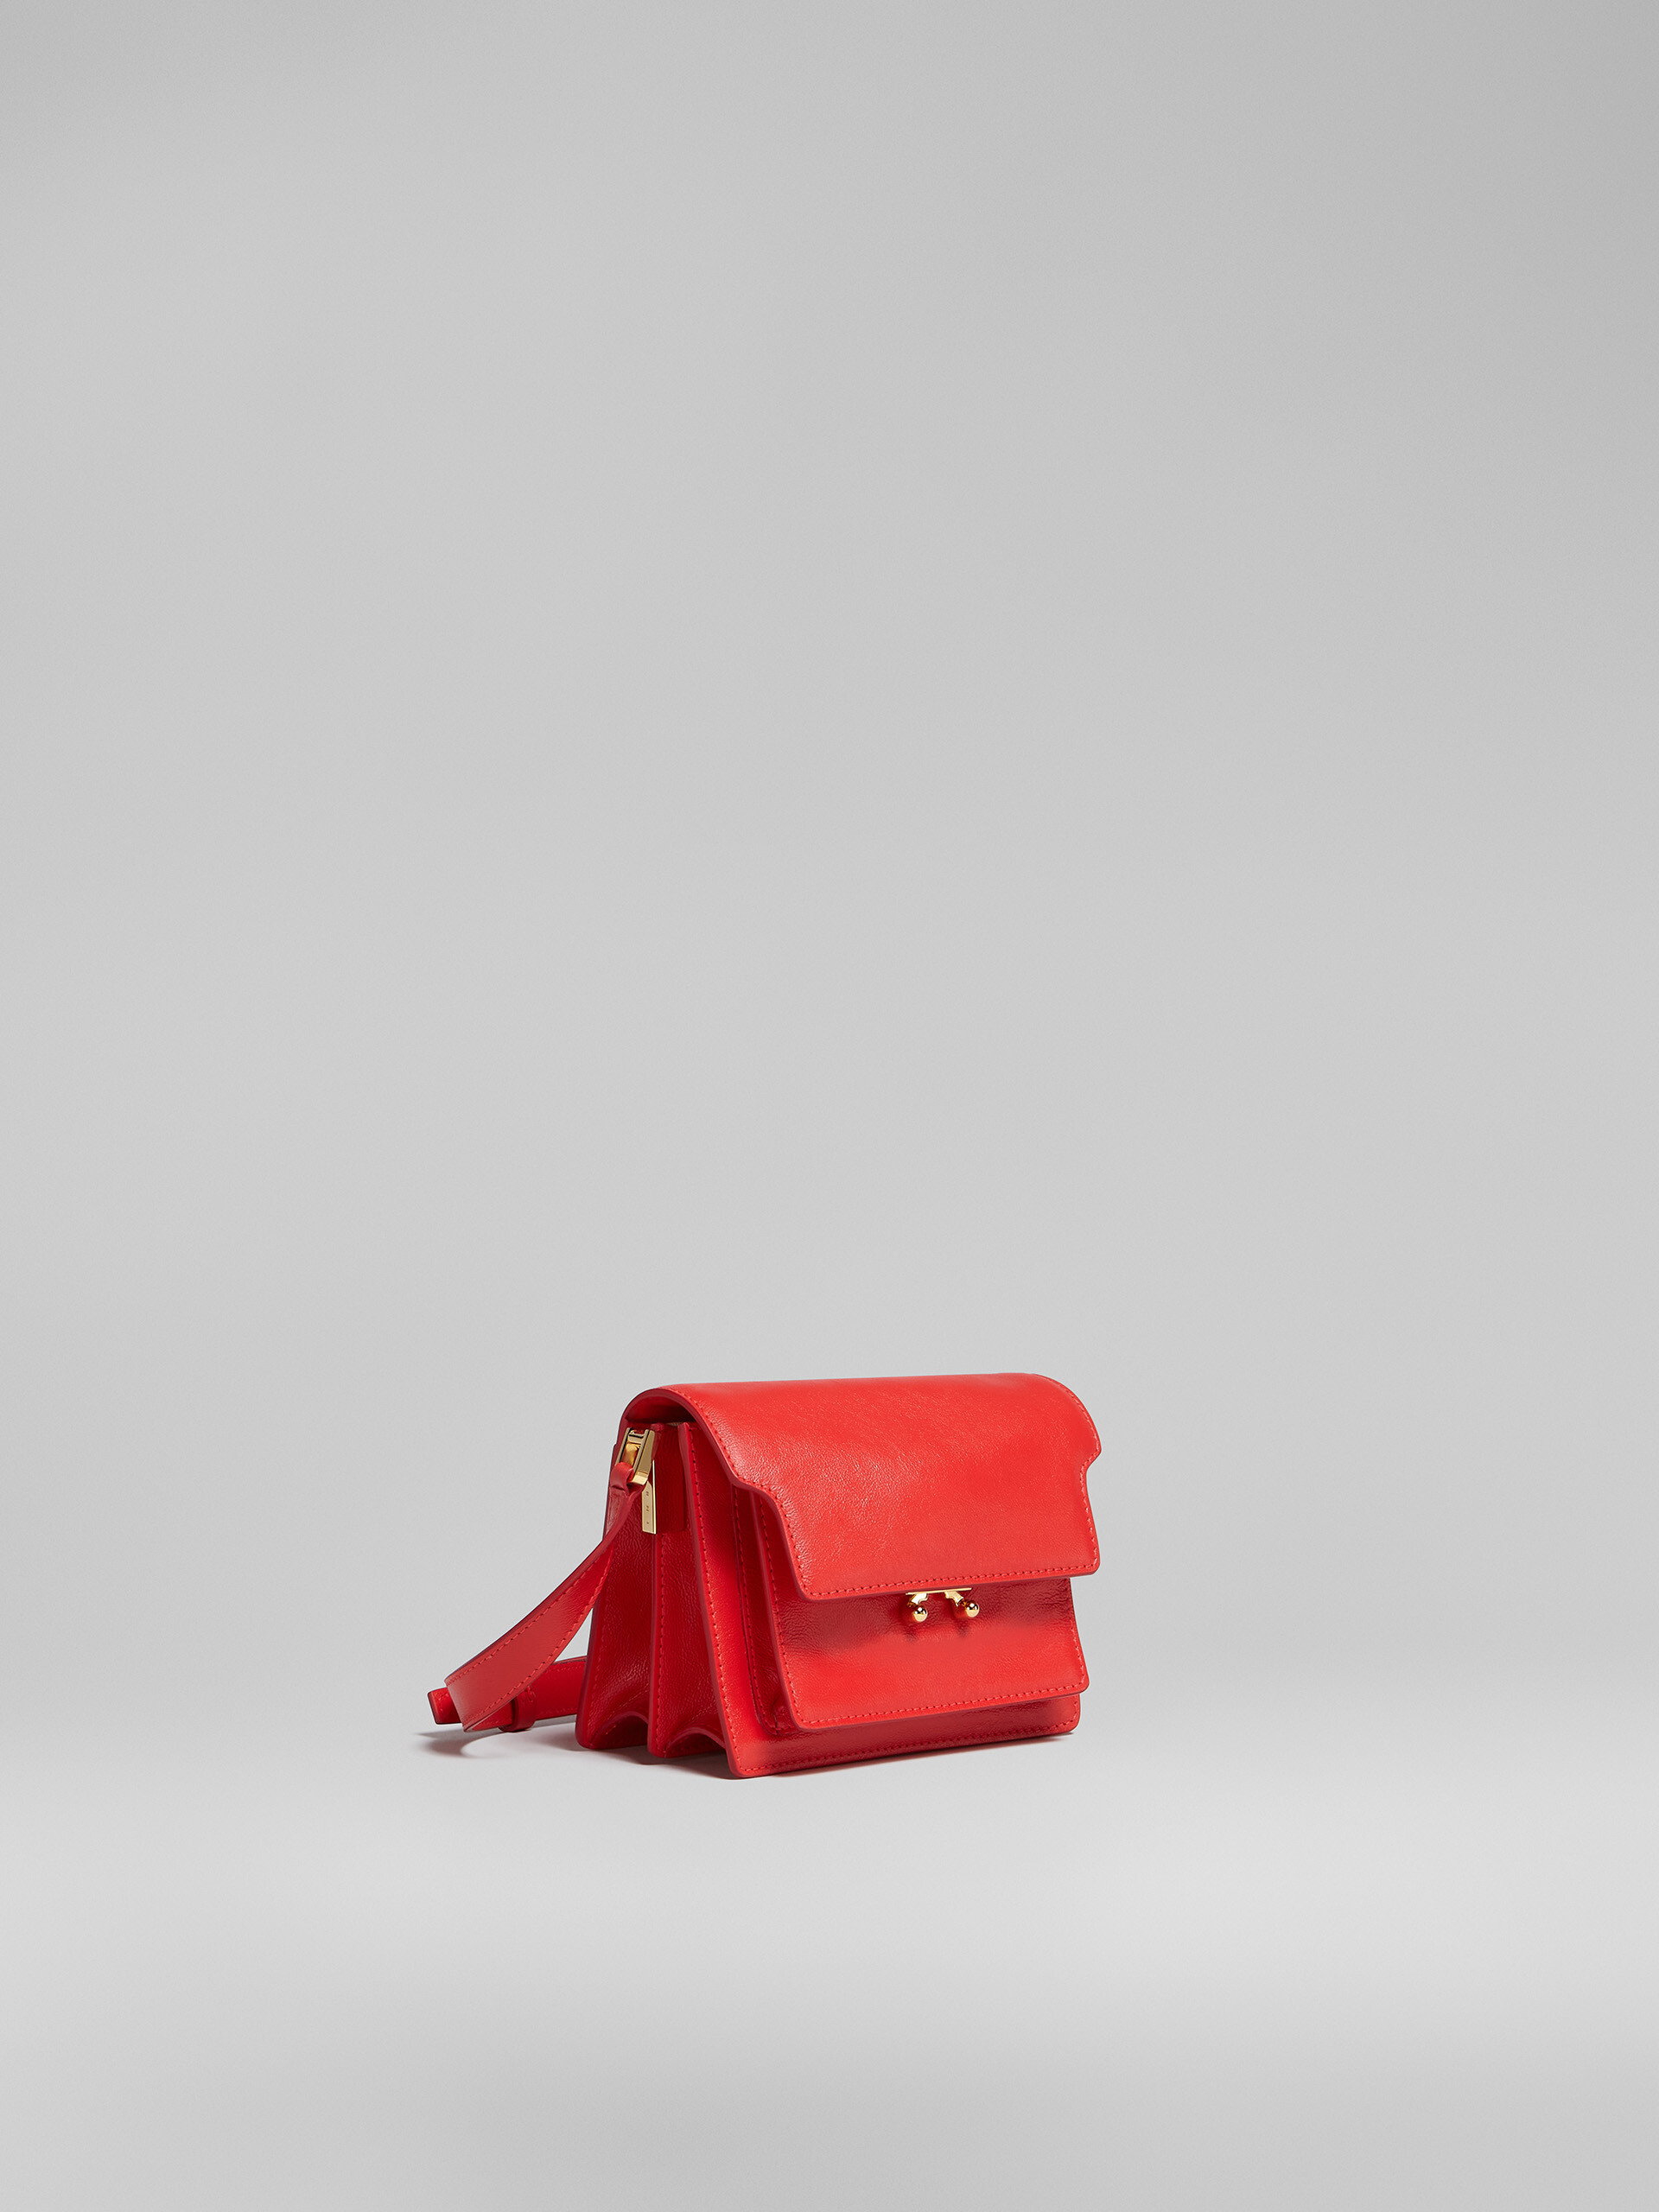 TRUNK SOFT mini bag in red leather - Shoulder Bag - Image 6